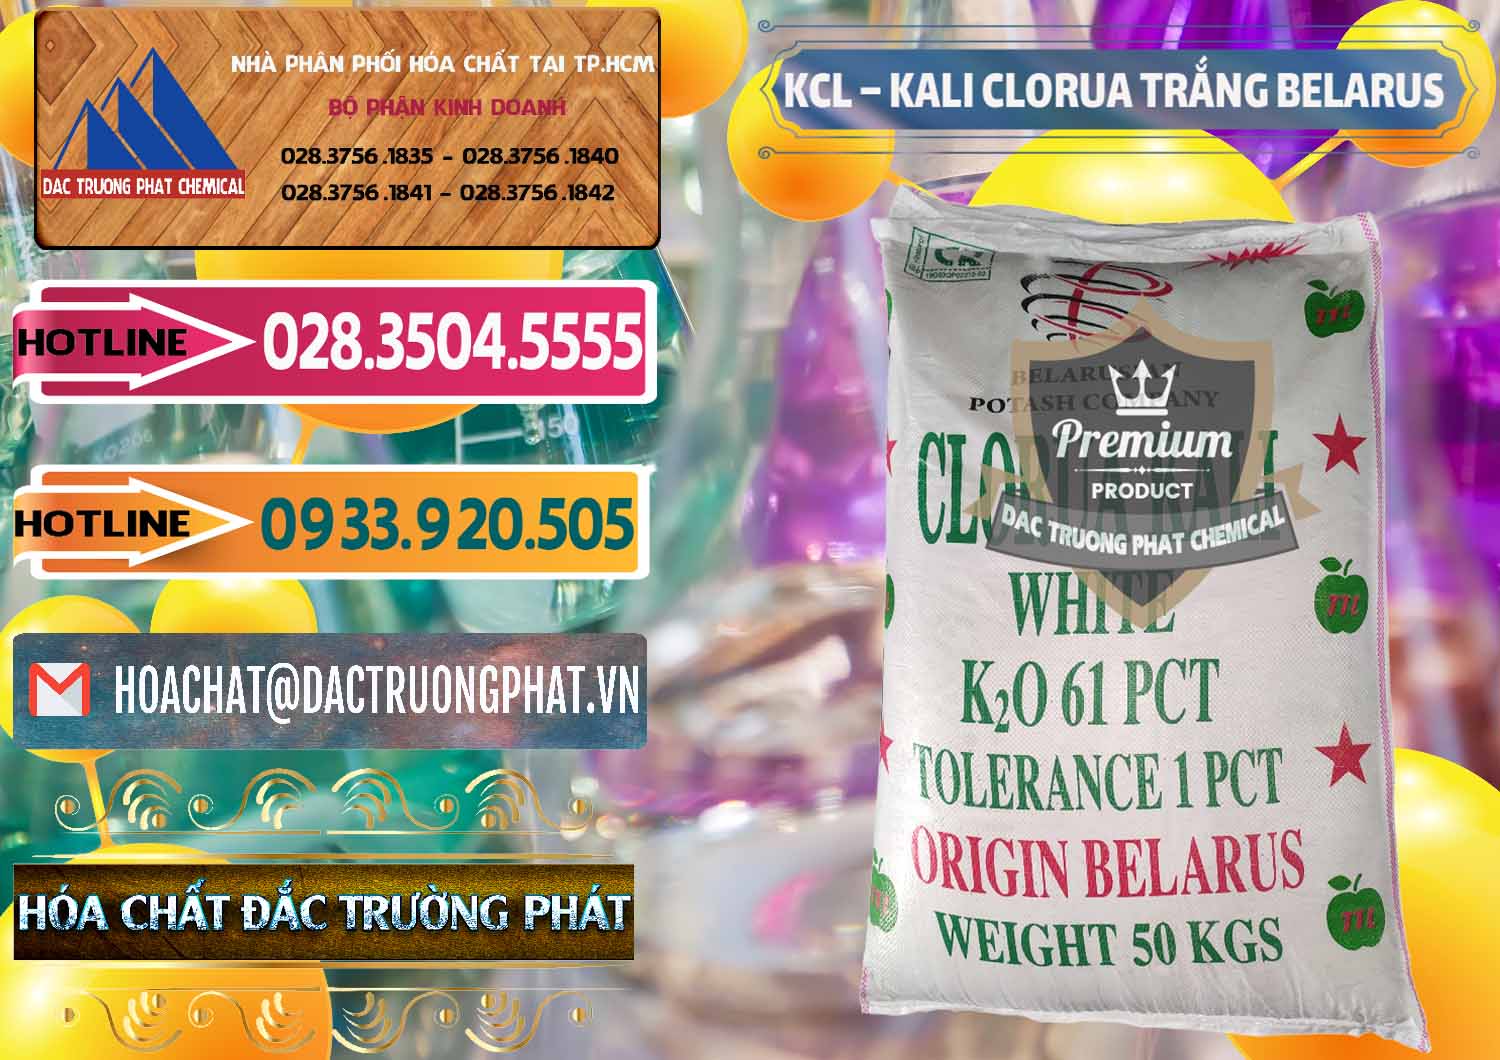 Công ty chuyên bán - cung ứng KCL – Kali Clorua Trắng Belarus - 0085 - Phân phối _ kinh doanh hóa chất tại TP.HCM - dactruongphat.vn